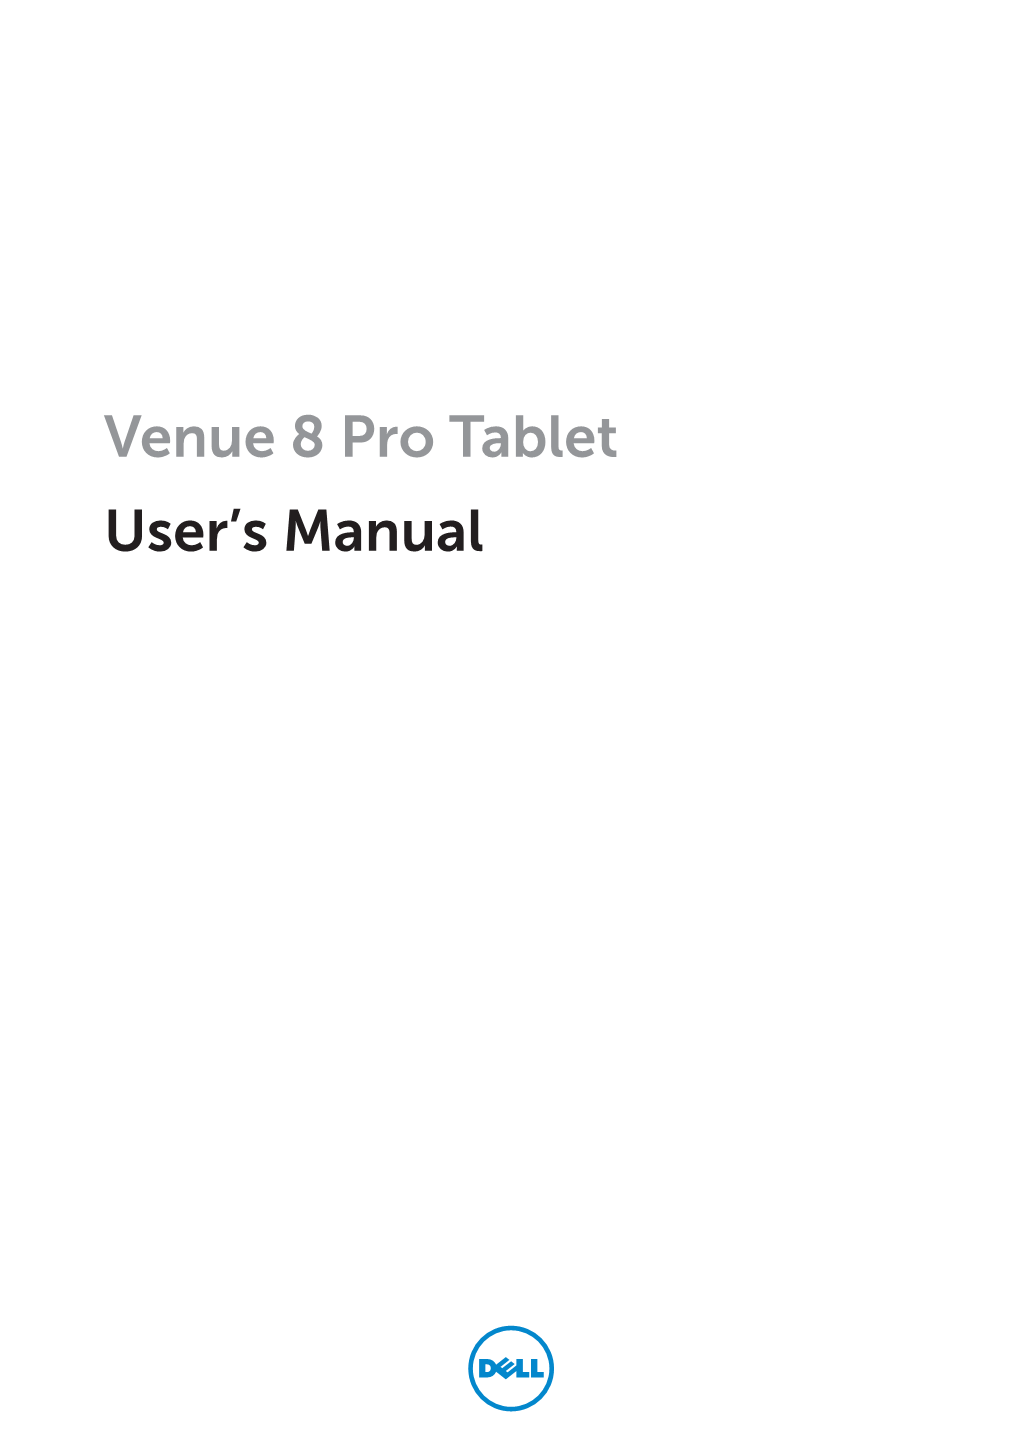 Dell Venue 8 Pro User's Manual